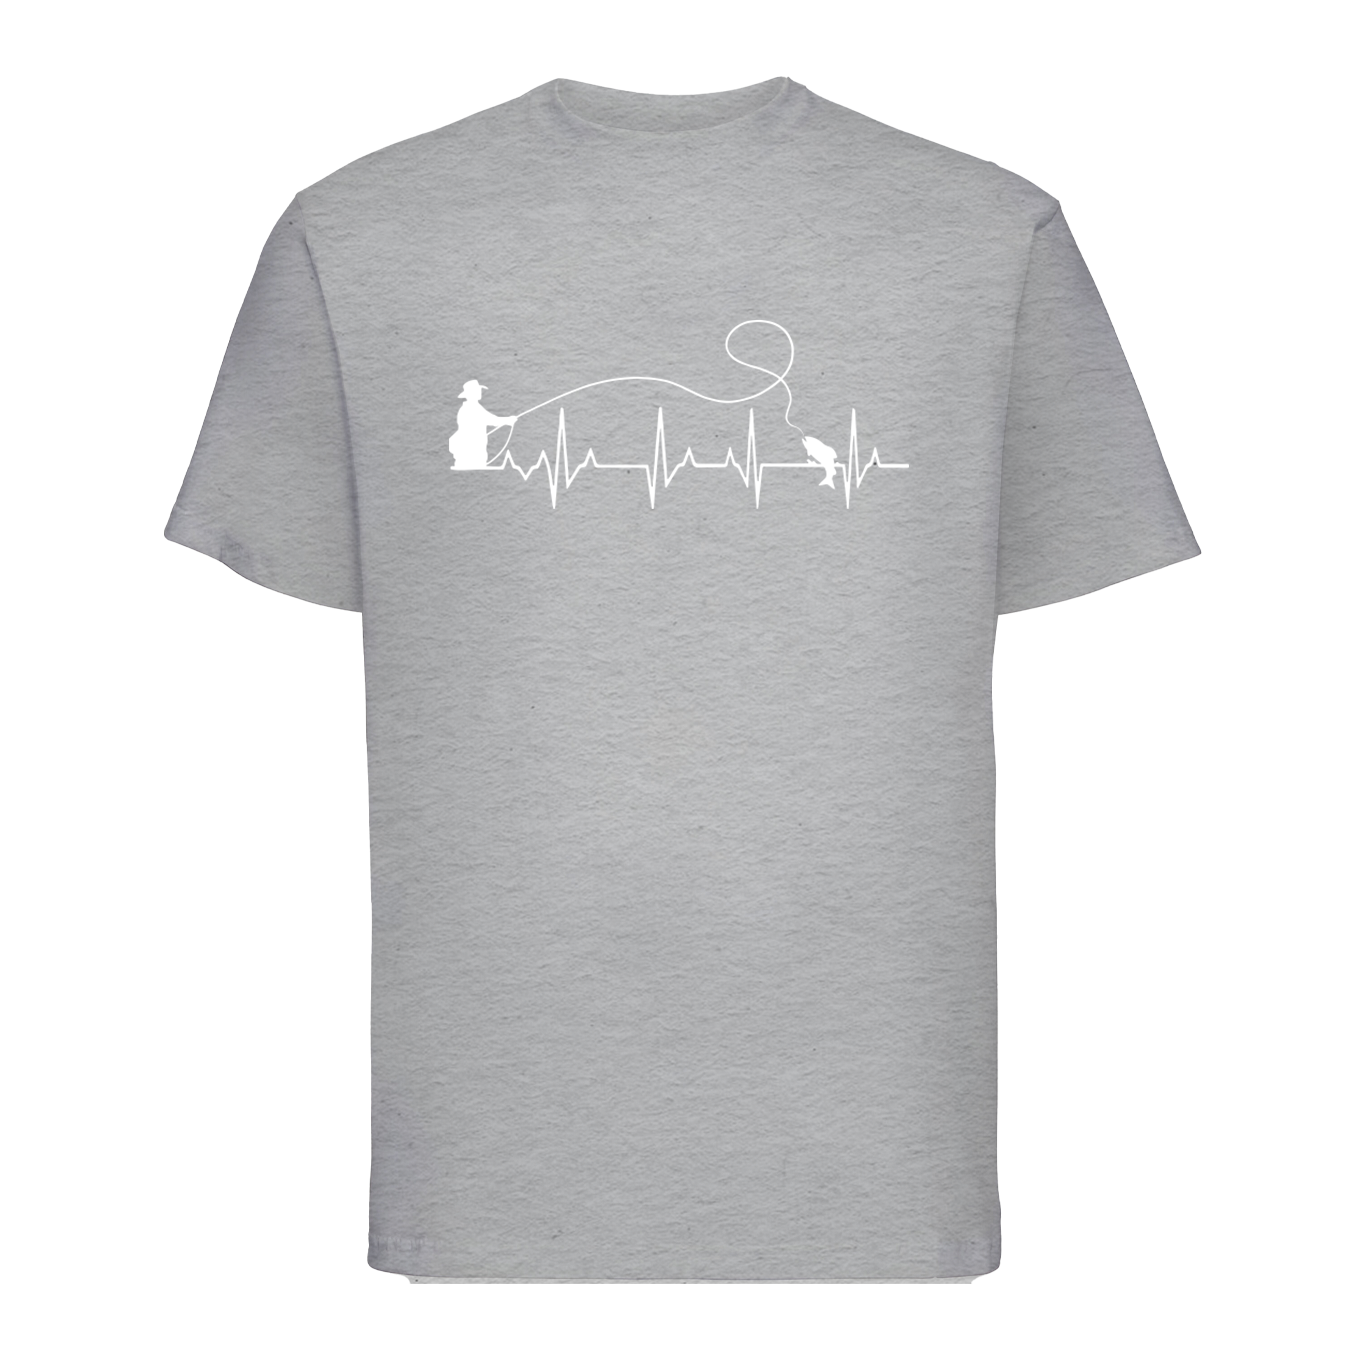 T-shirt "Fishing Heartbeat"